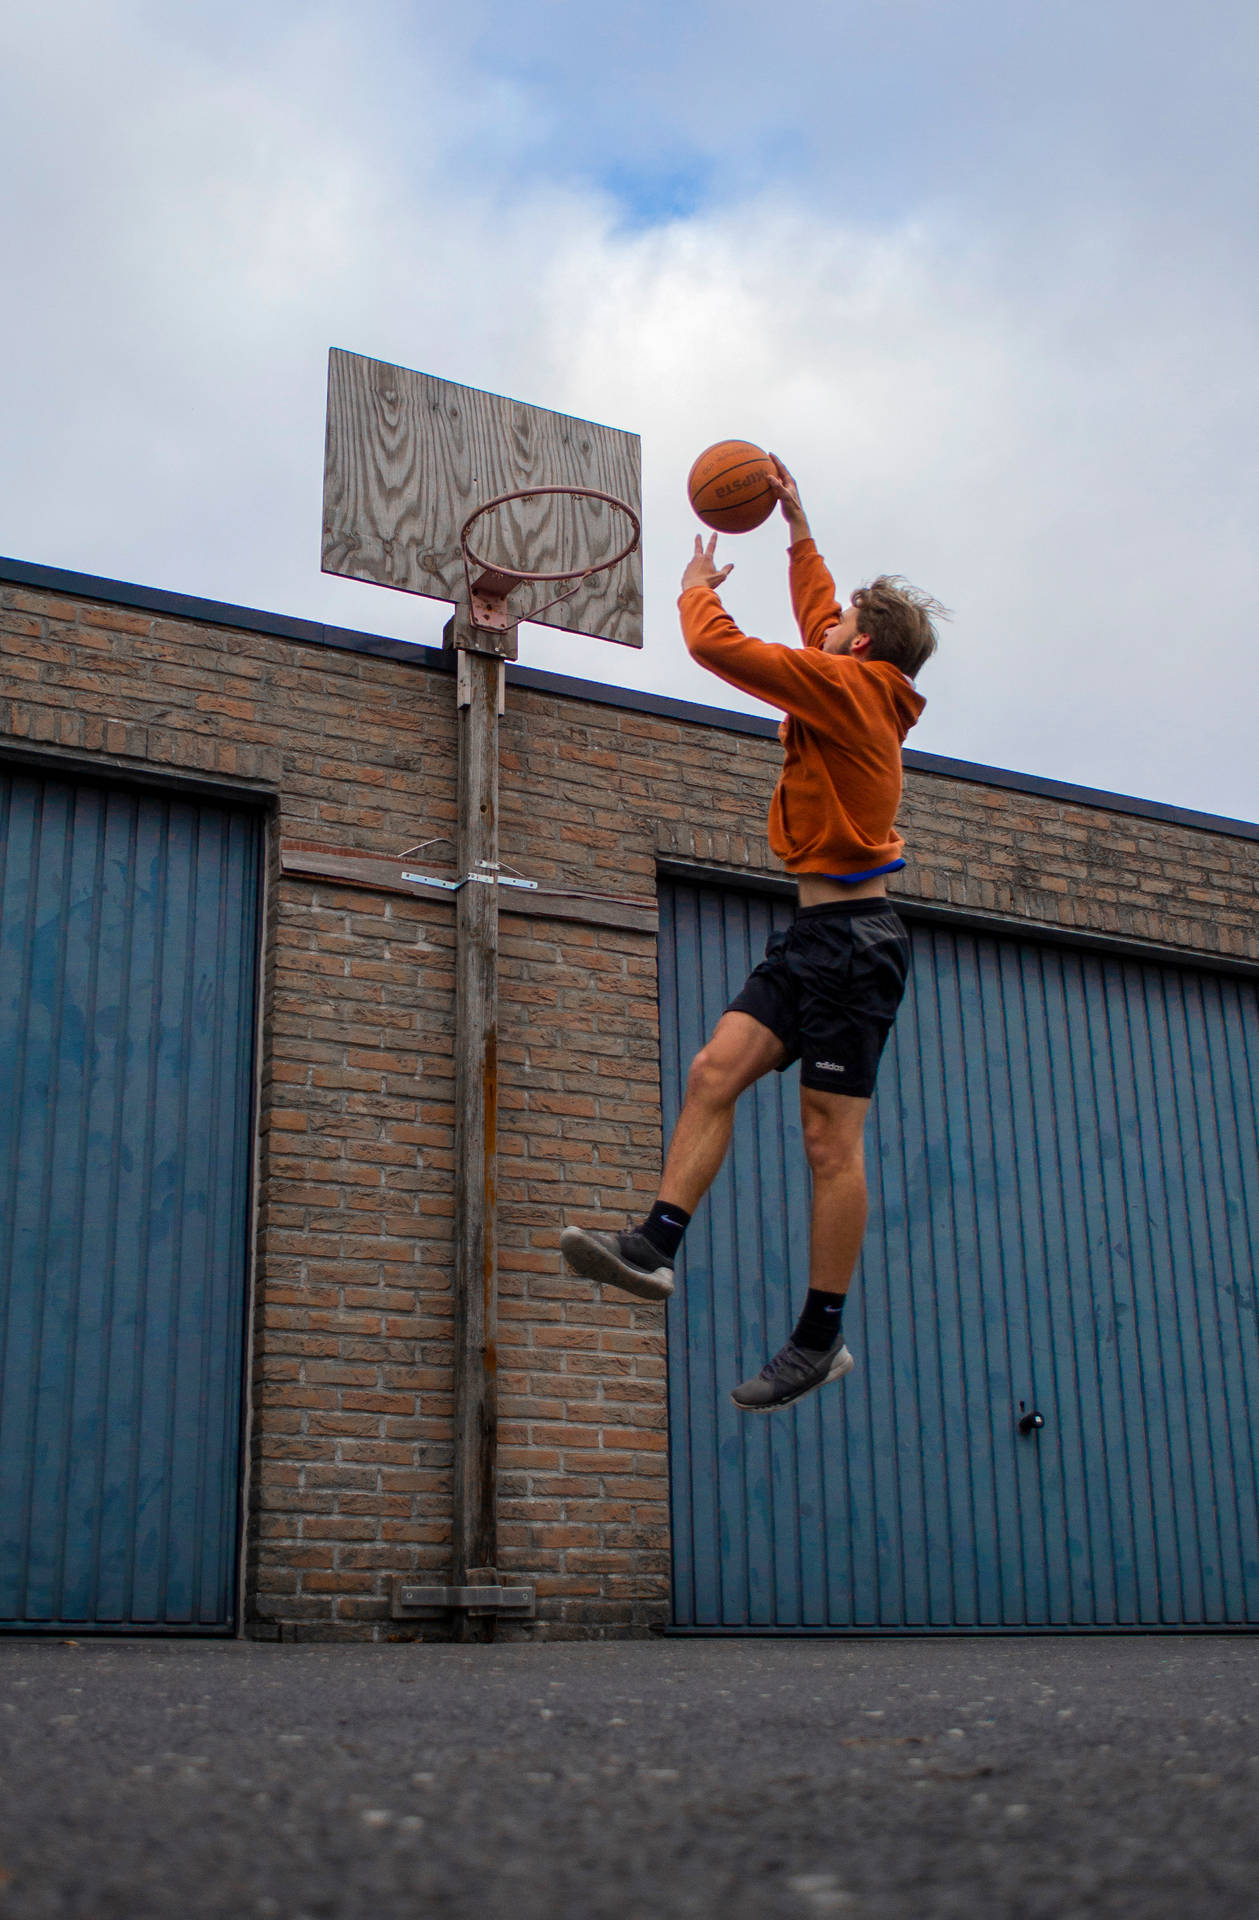 High Flying Slam Dunk In Basketball Game Wallpaper